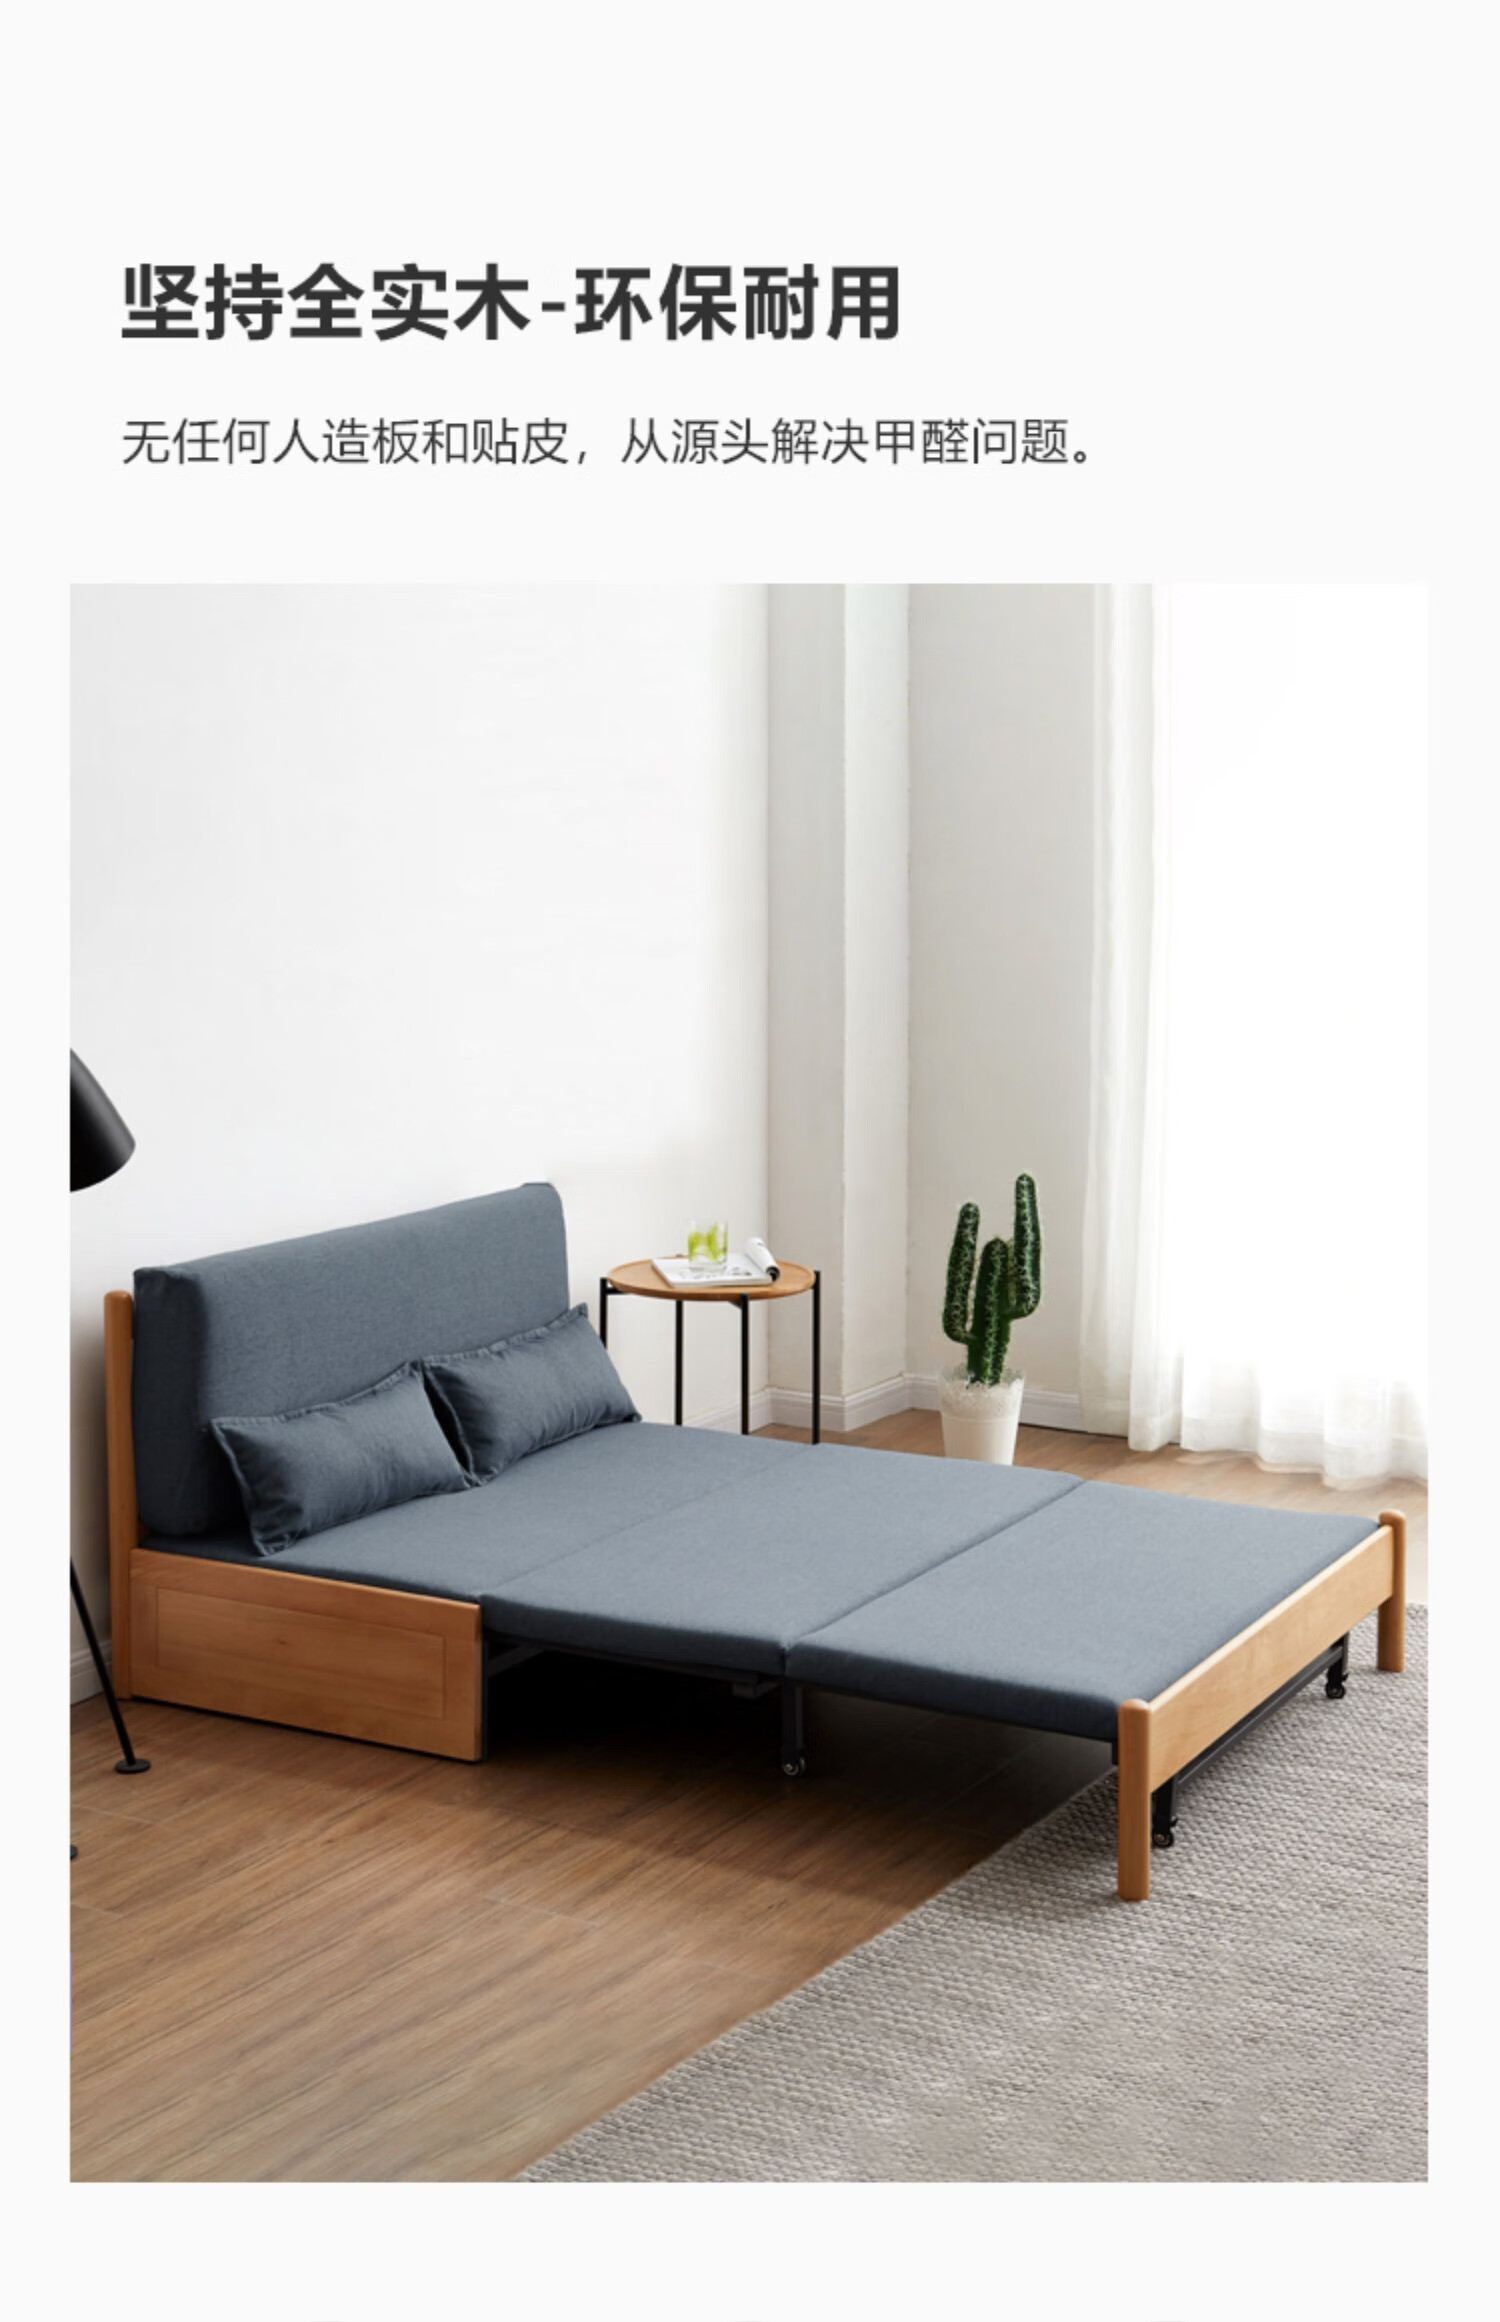 朵艺实木沙发床多功能两用可伸缩榉木沙发现代简约客厅家用折叠床雾